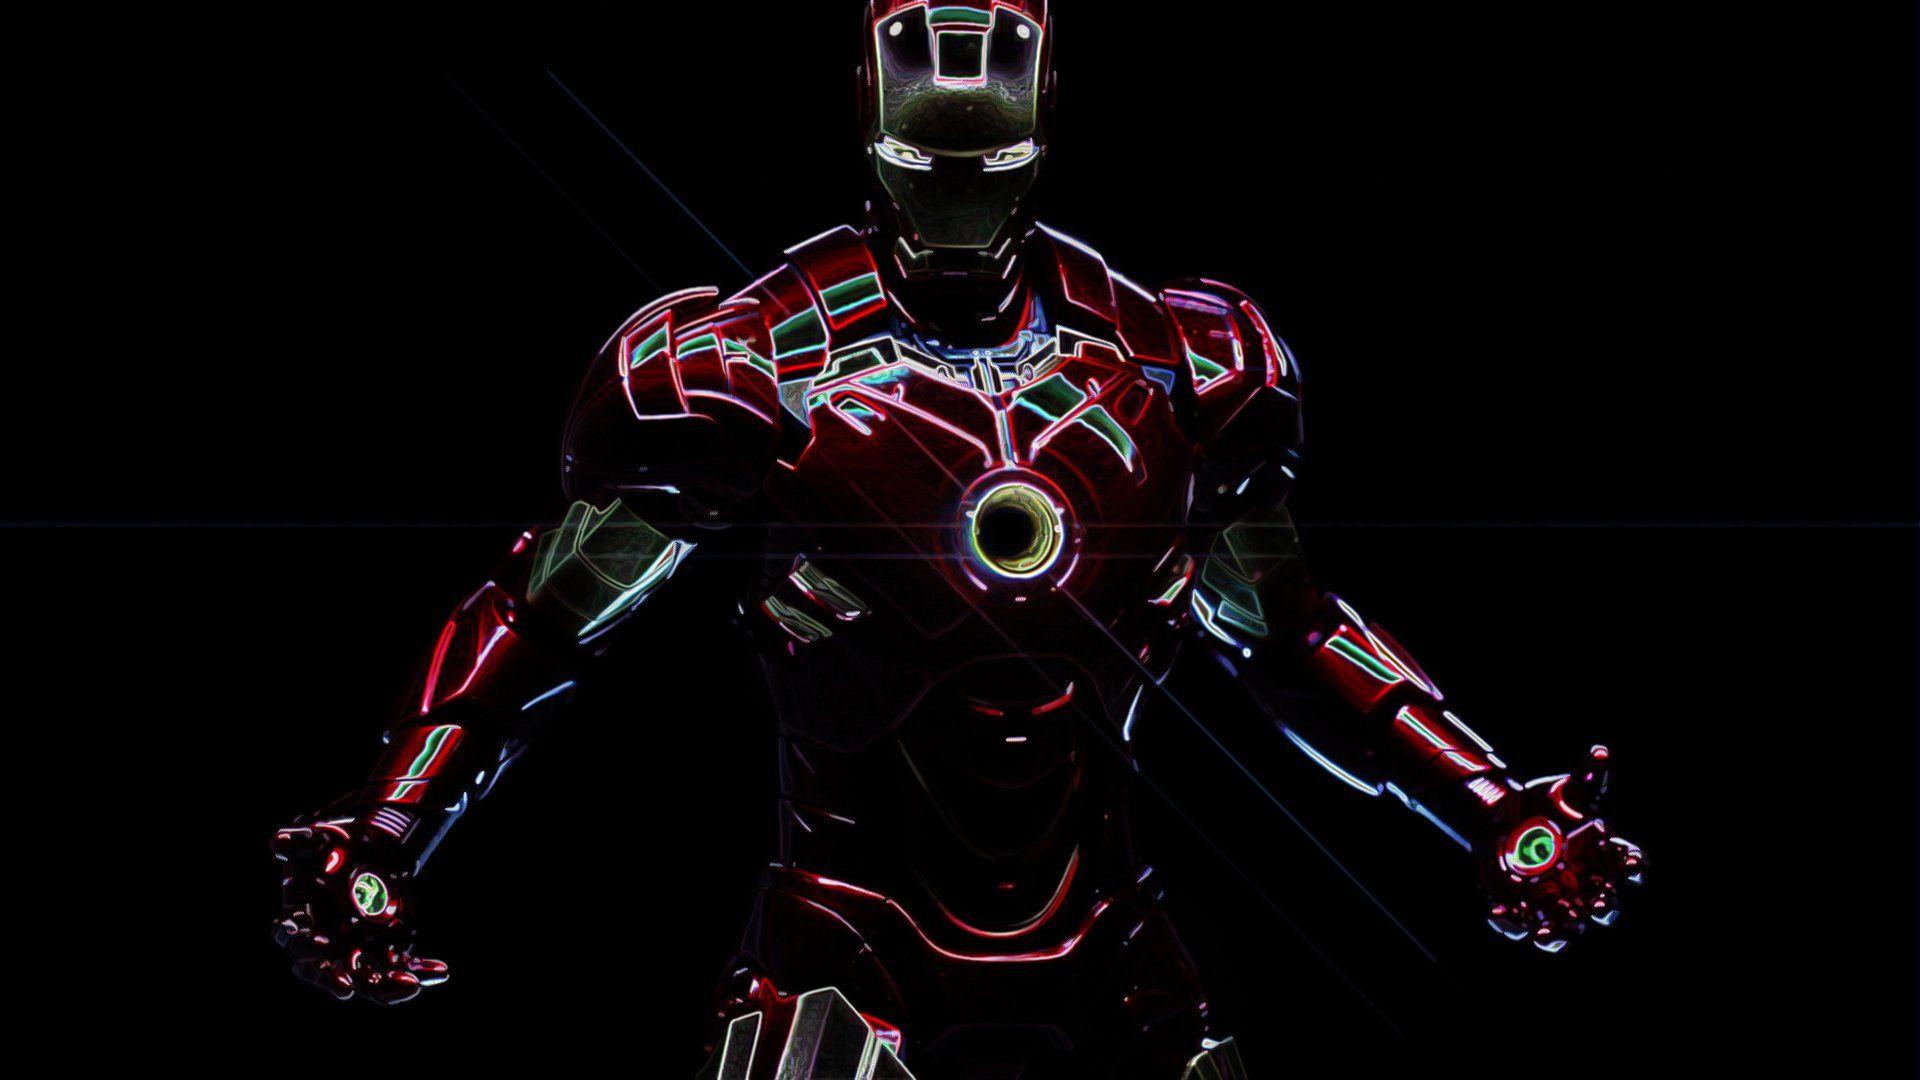 Cool Iron Man Wallpaper Free Cool Iron Man Background